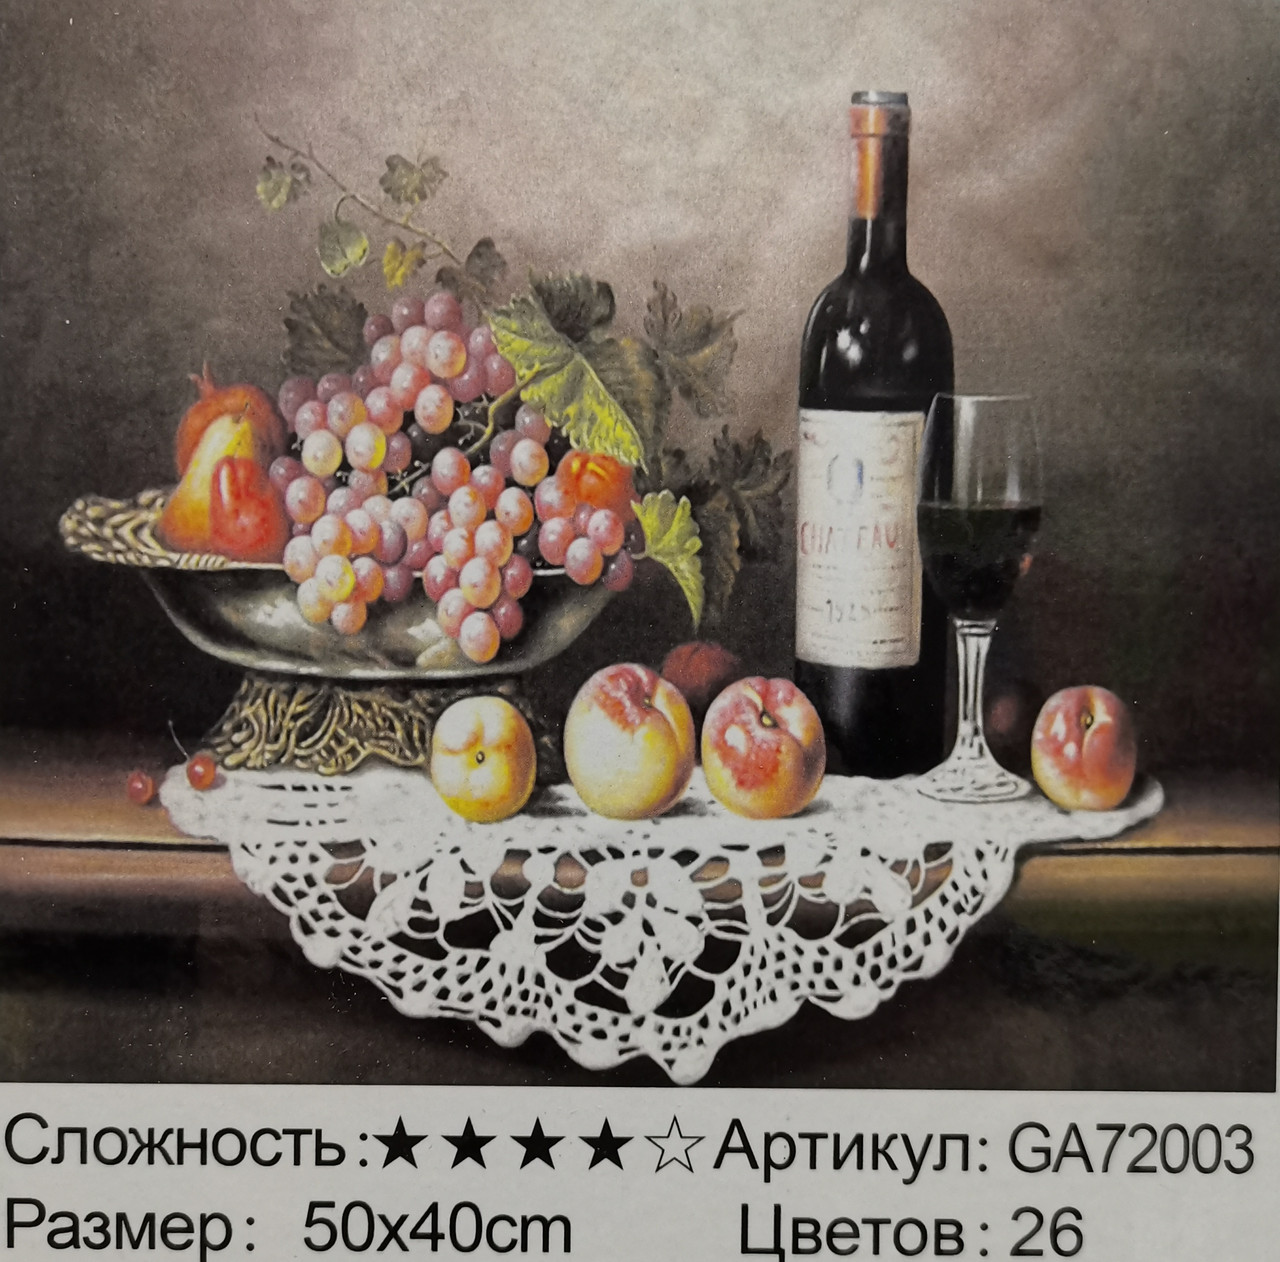 Алмазная мозаика Натюрморт Вино и фрукты 40х50 см (GA72003)